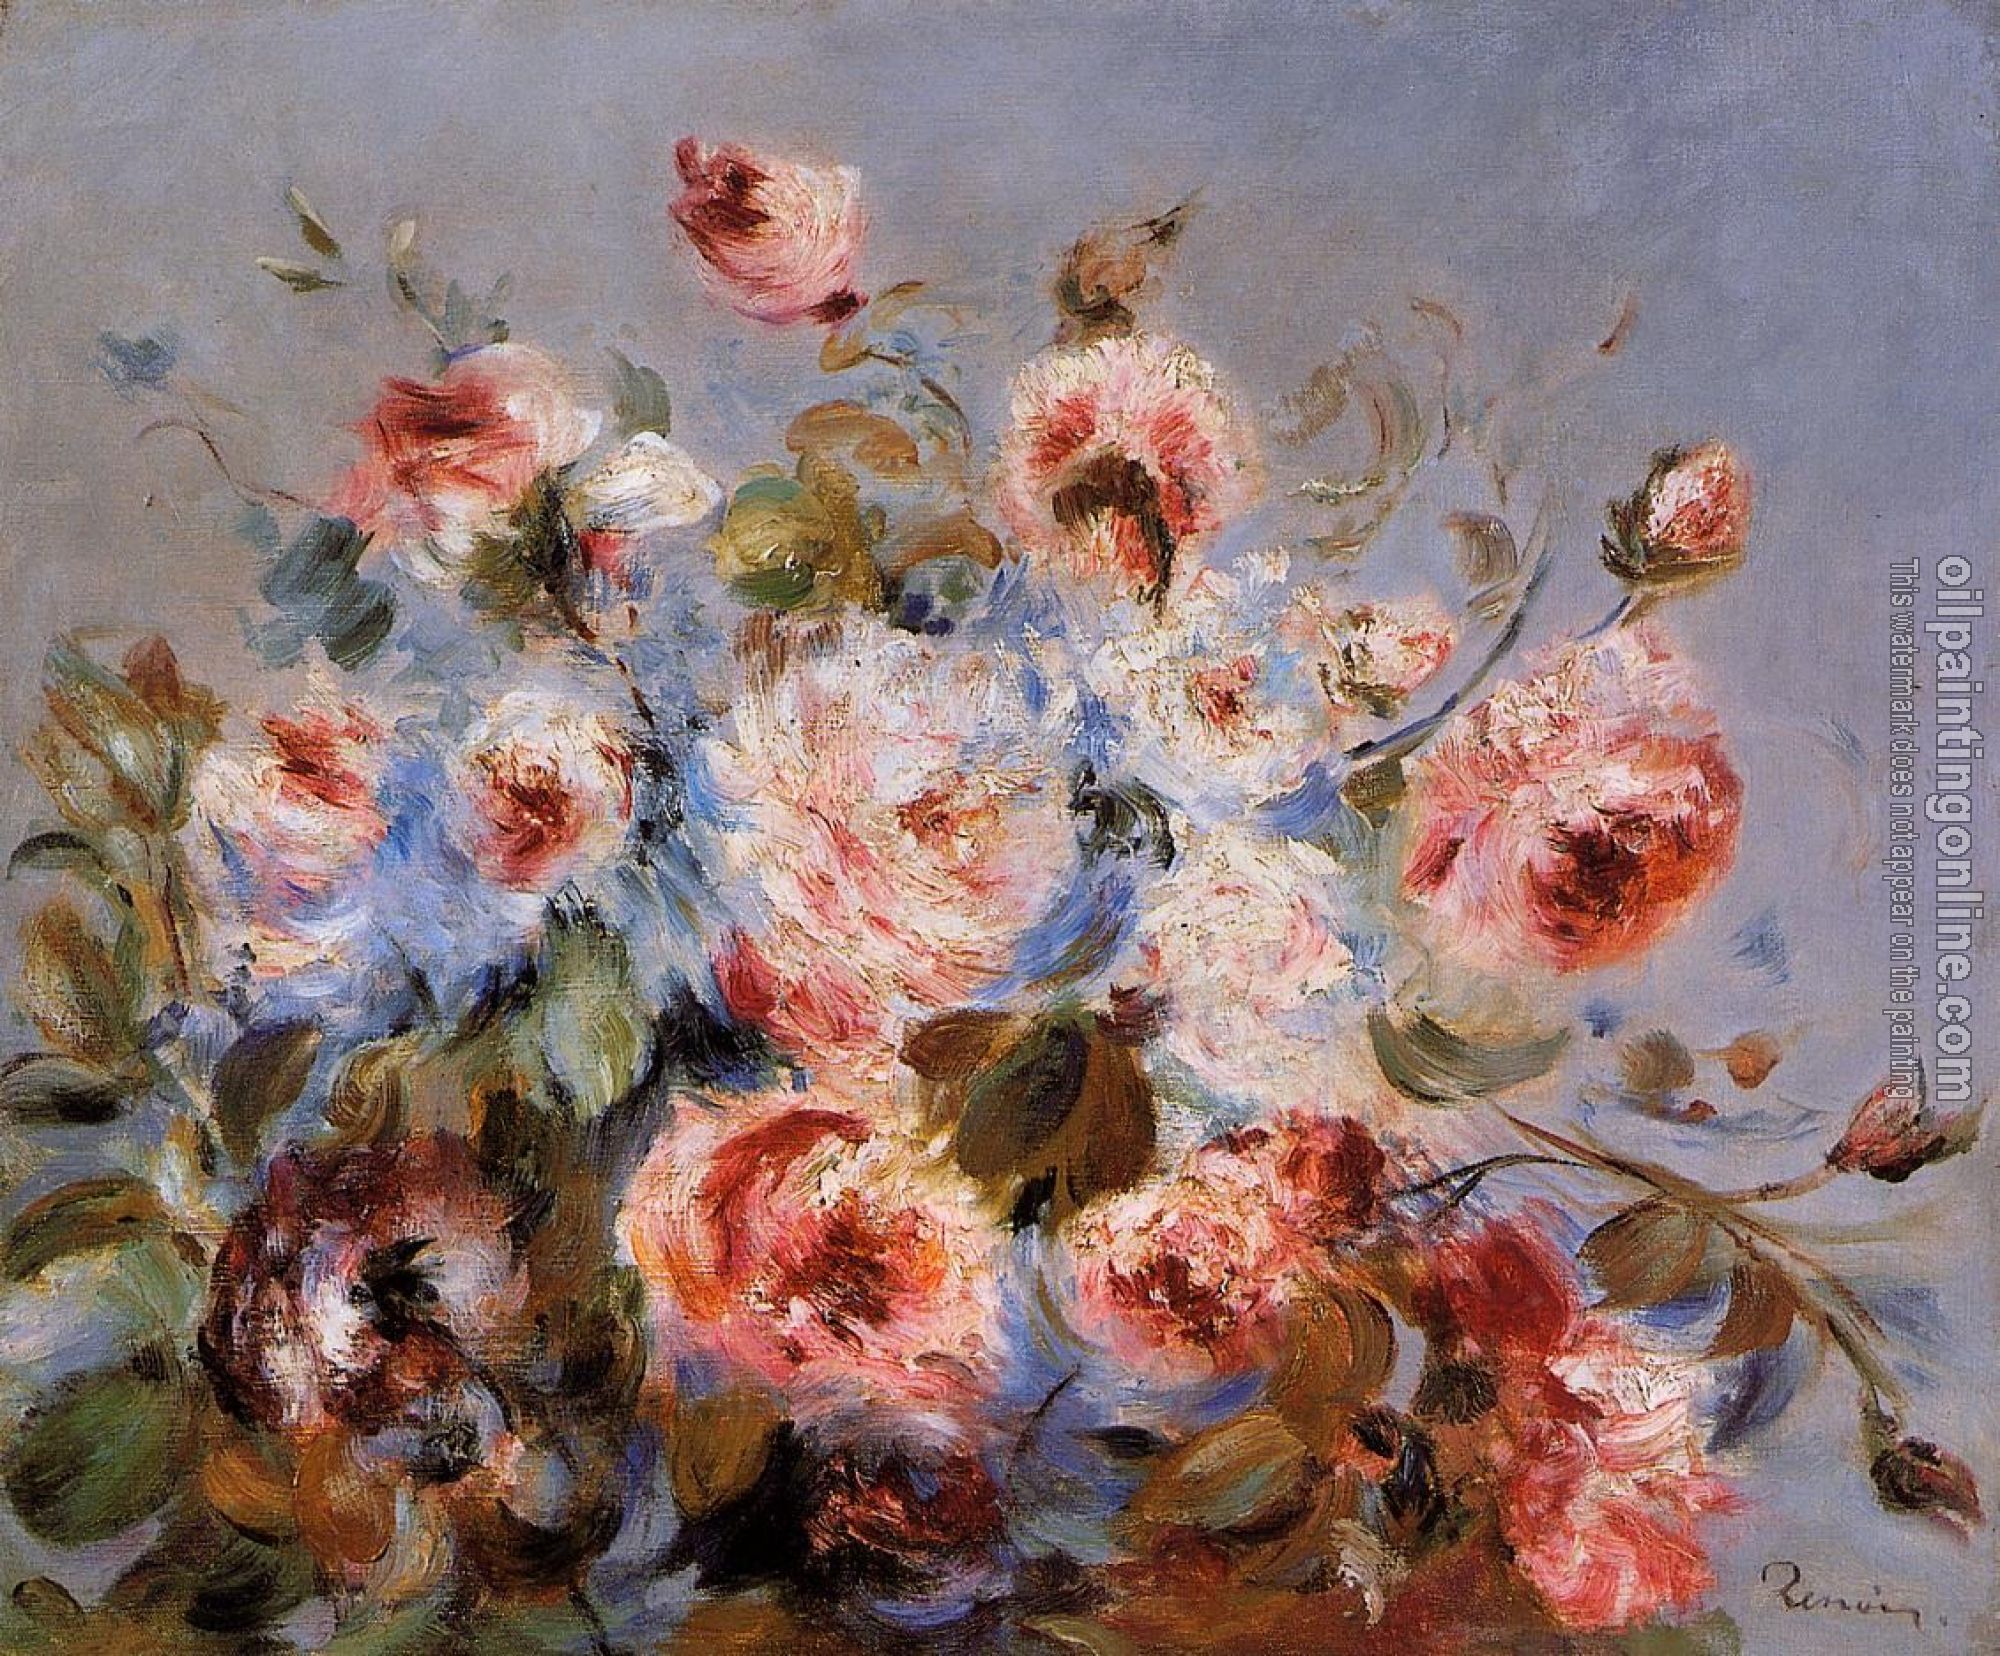 Renoir, Pierre Auguste - Roses from Wargemont